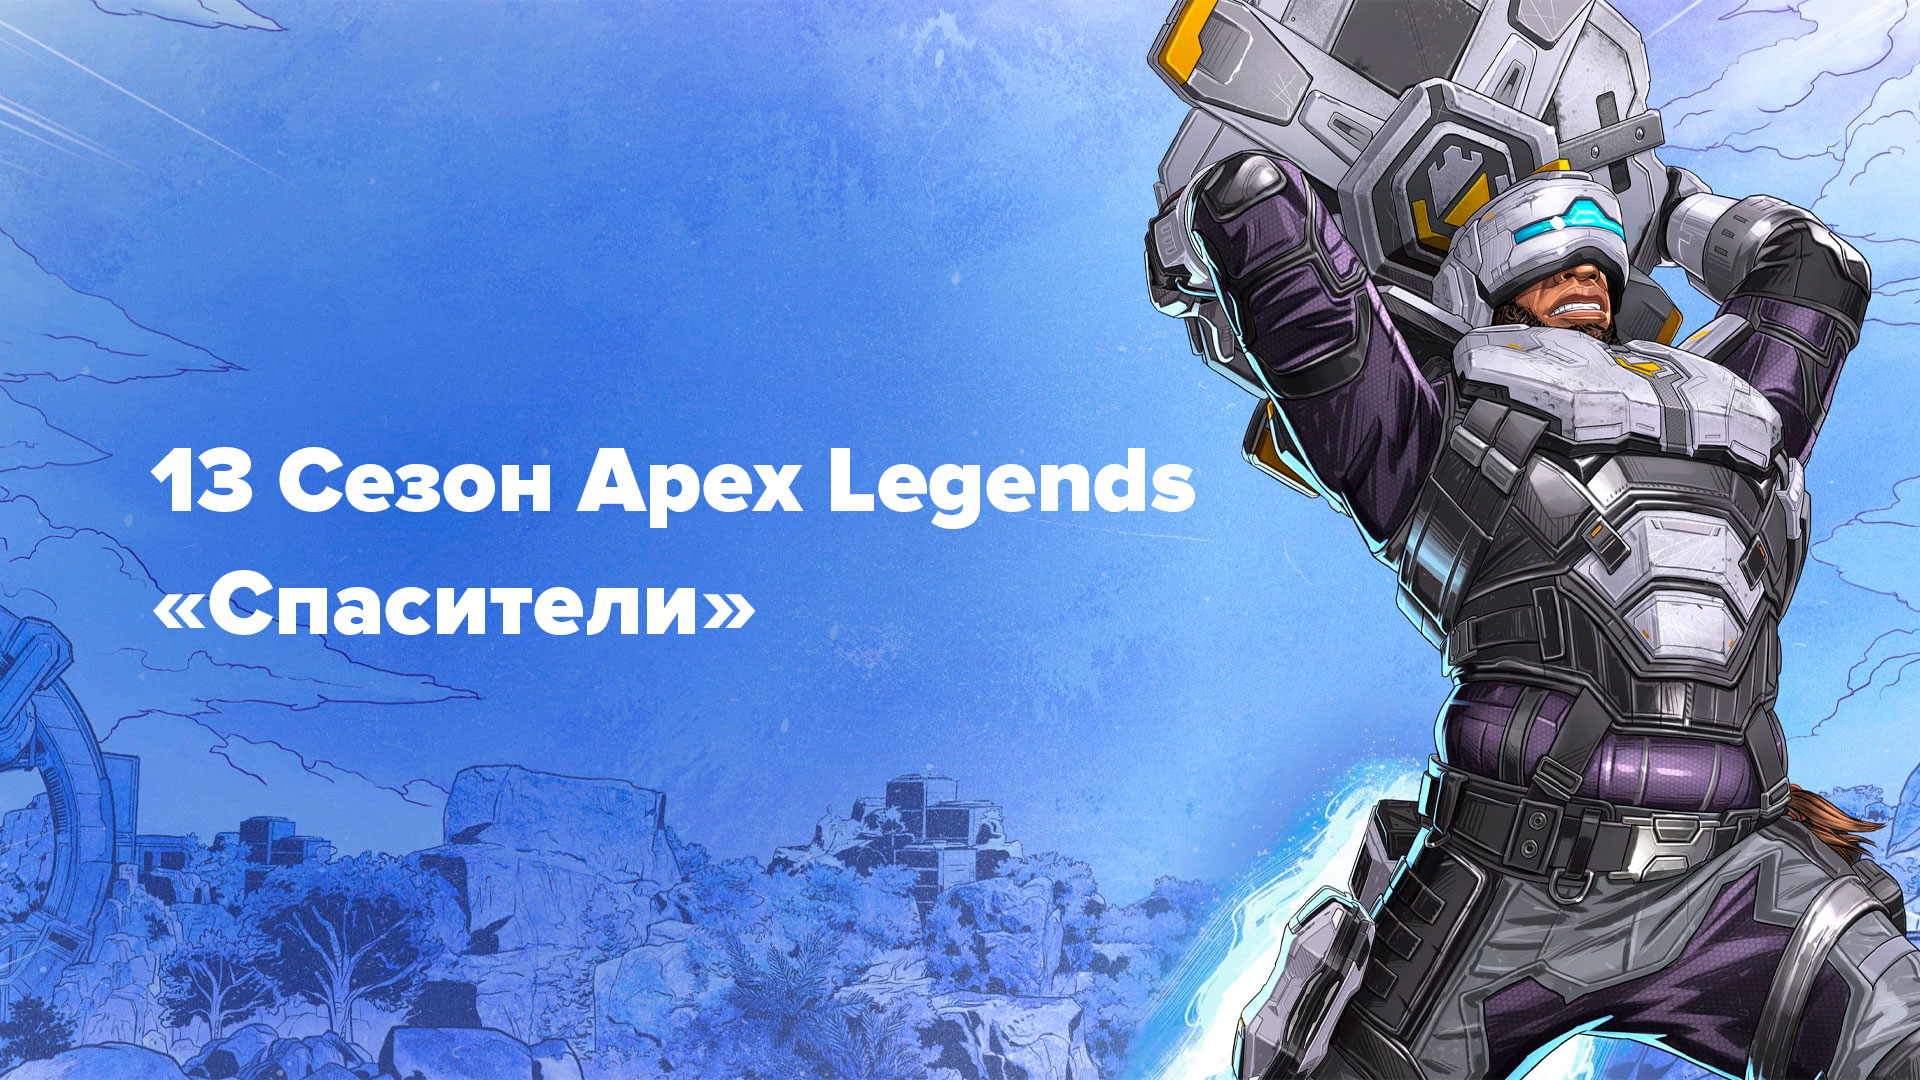 Разработчики Apex Legends анонсировали 13 сезон — «Спасители», который добавляет новую легенду и изменения на карте Место Бури